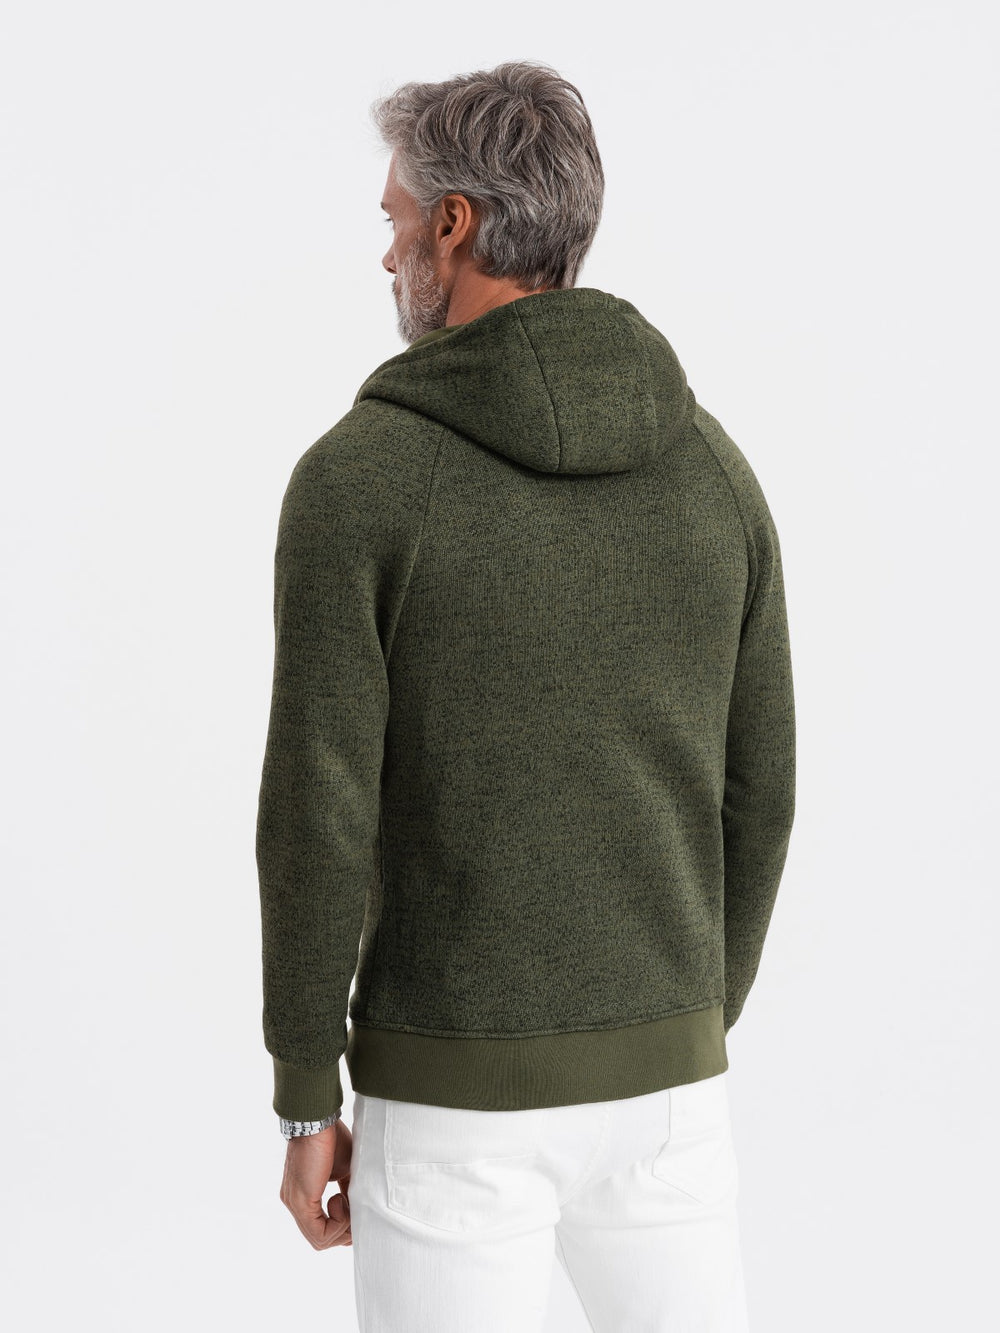 Hooded-Sweatshirt mit Reißverschluss in olive I Herren Mode Karlsruhe